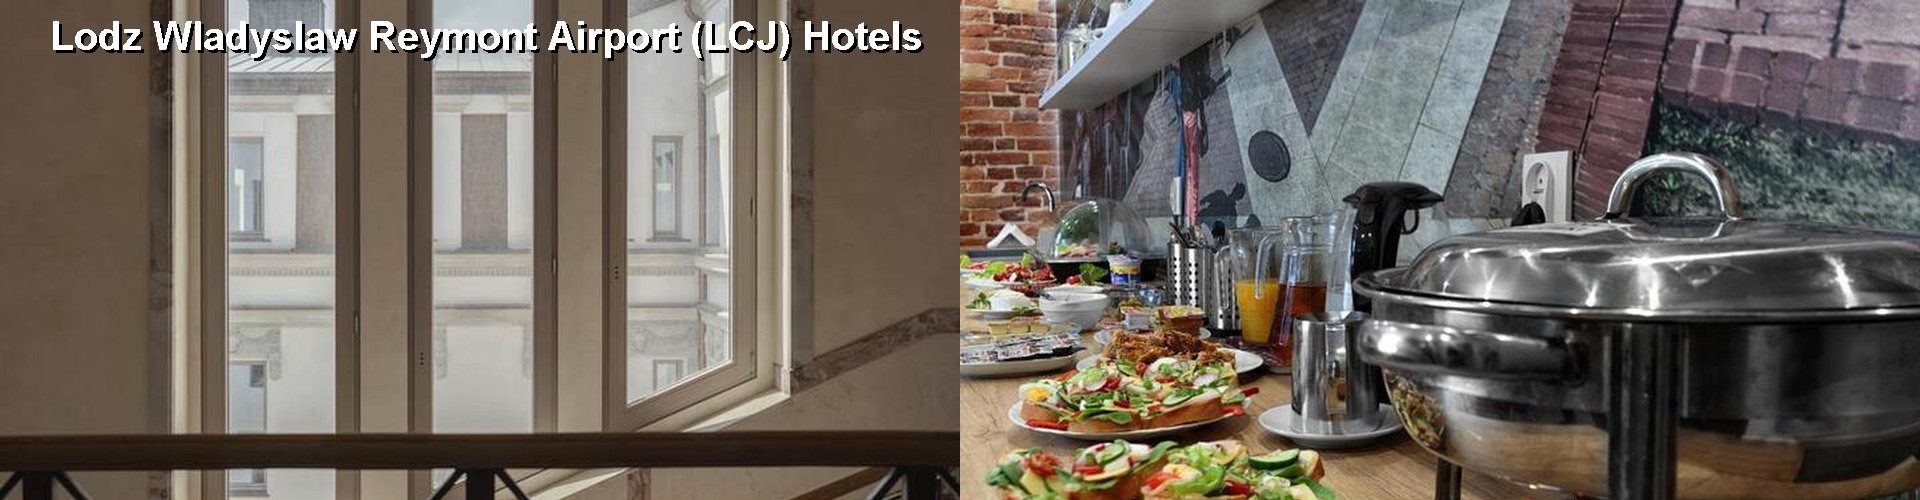 5 Best Hotels near Lodz Wladyslaw Reymont Airport (LCJ)